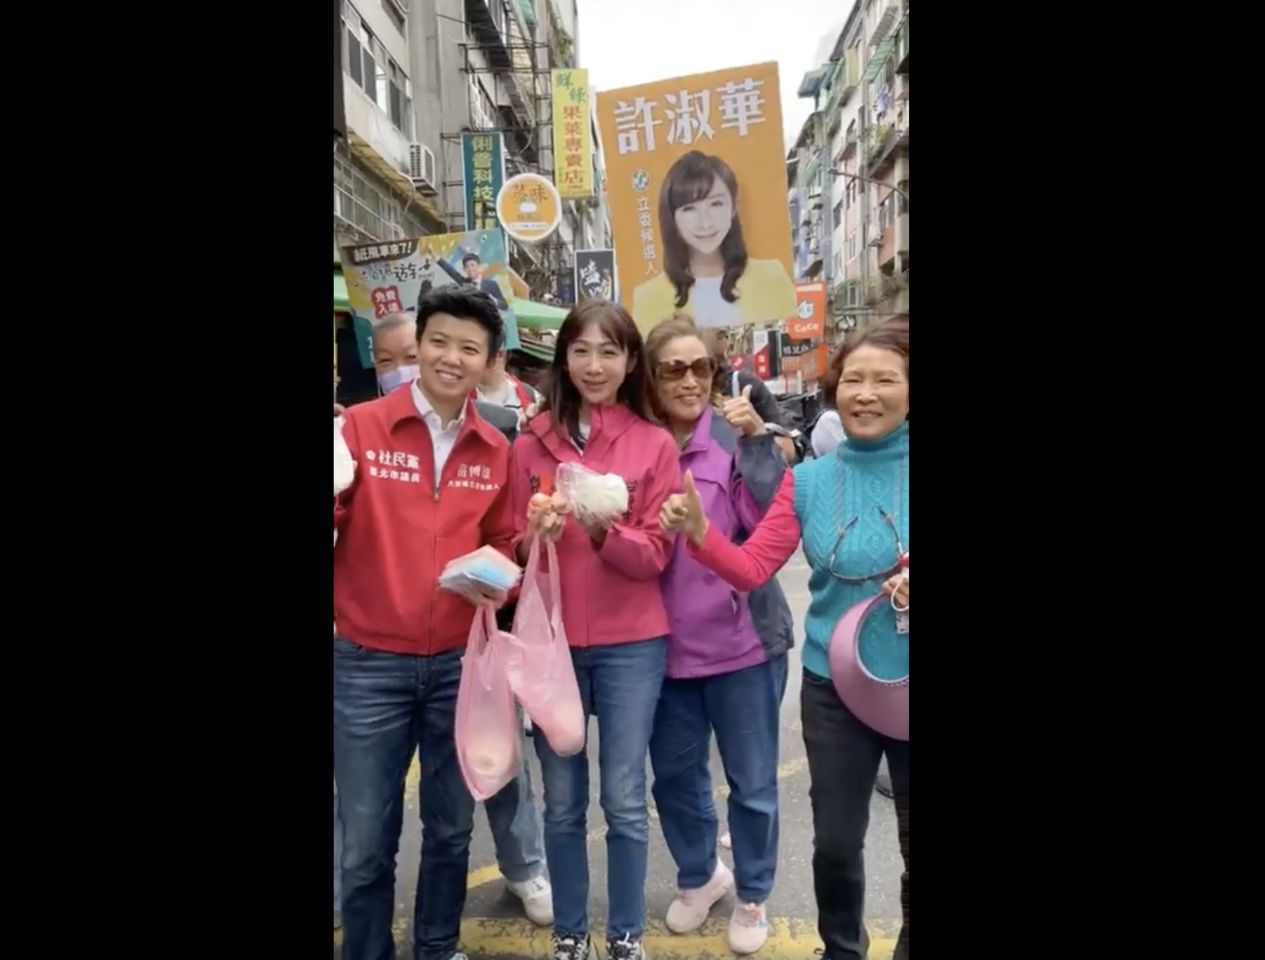 許淑華與苗博雅合體掃街　遇支持者熱情拍照、送包子 | ETtoday政治